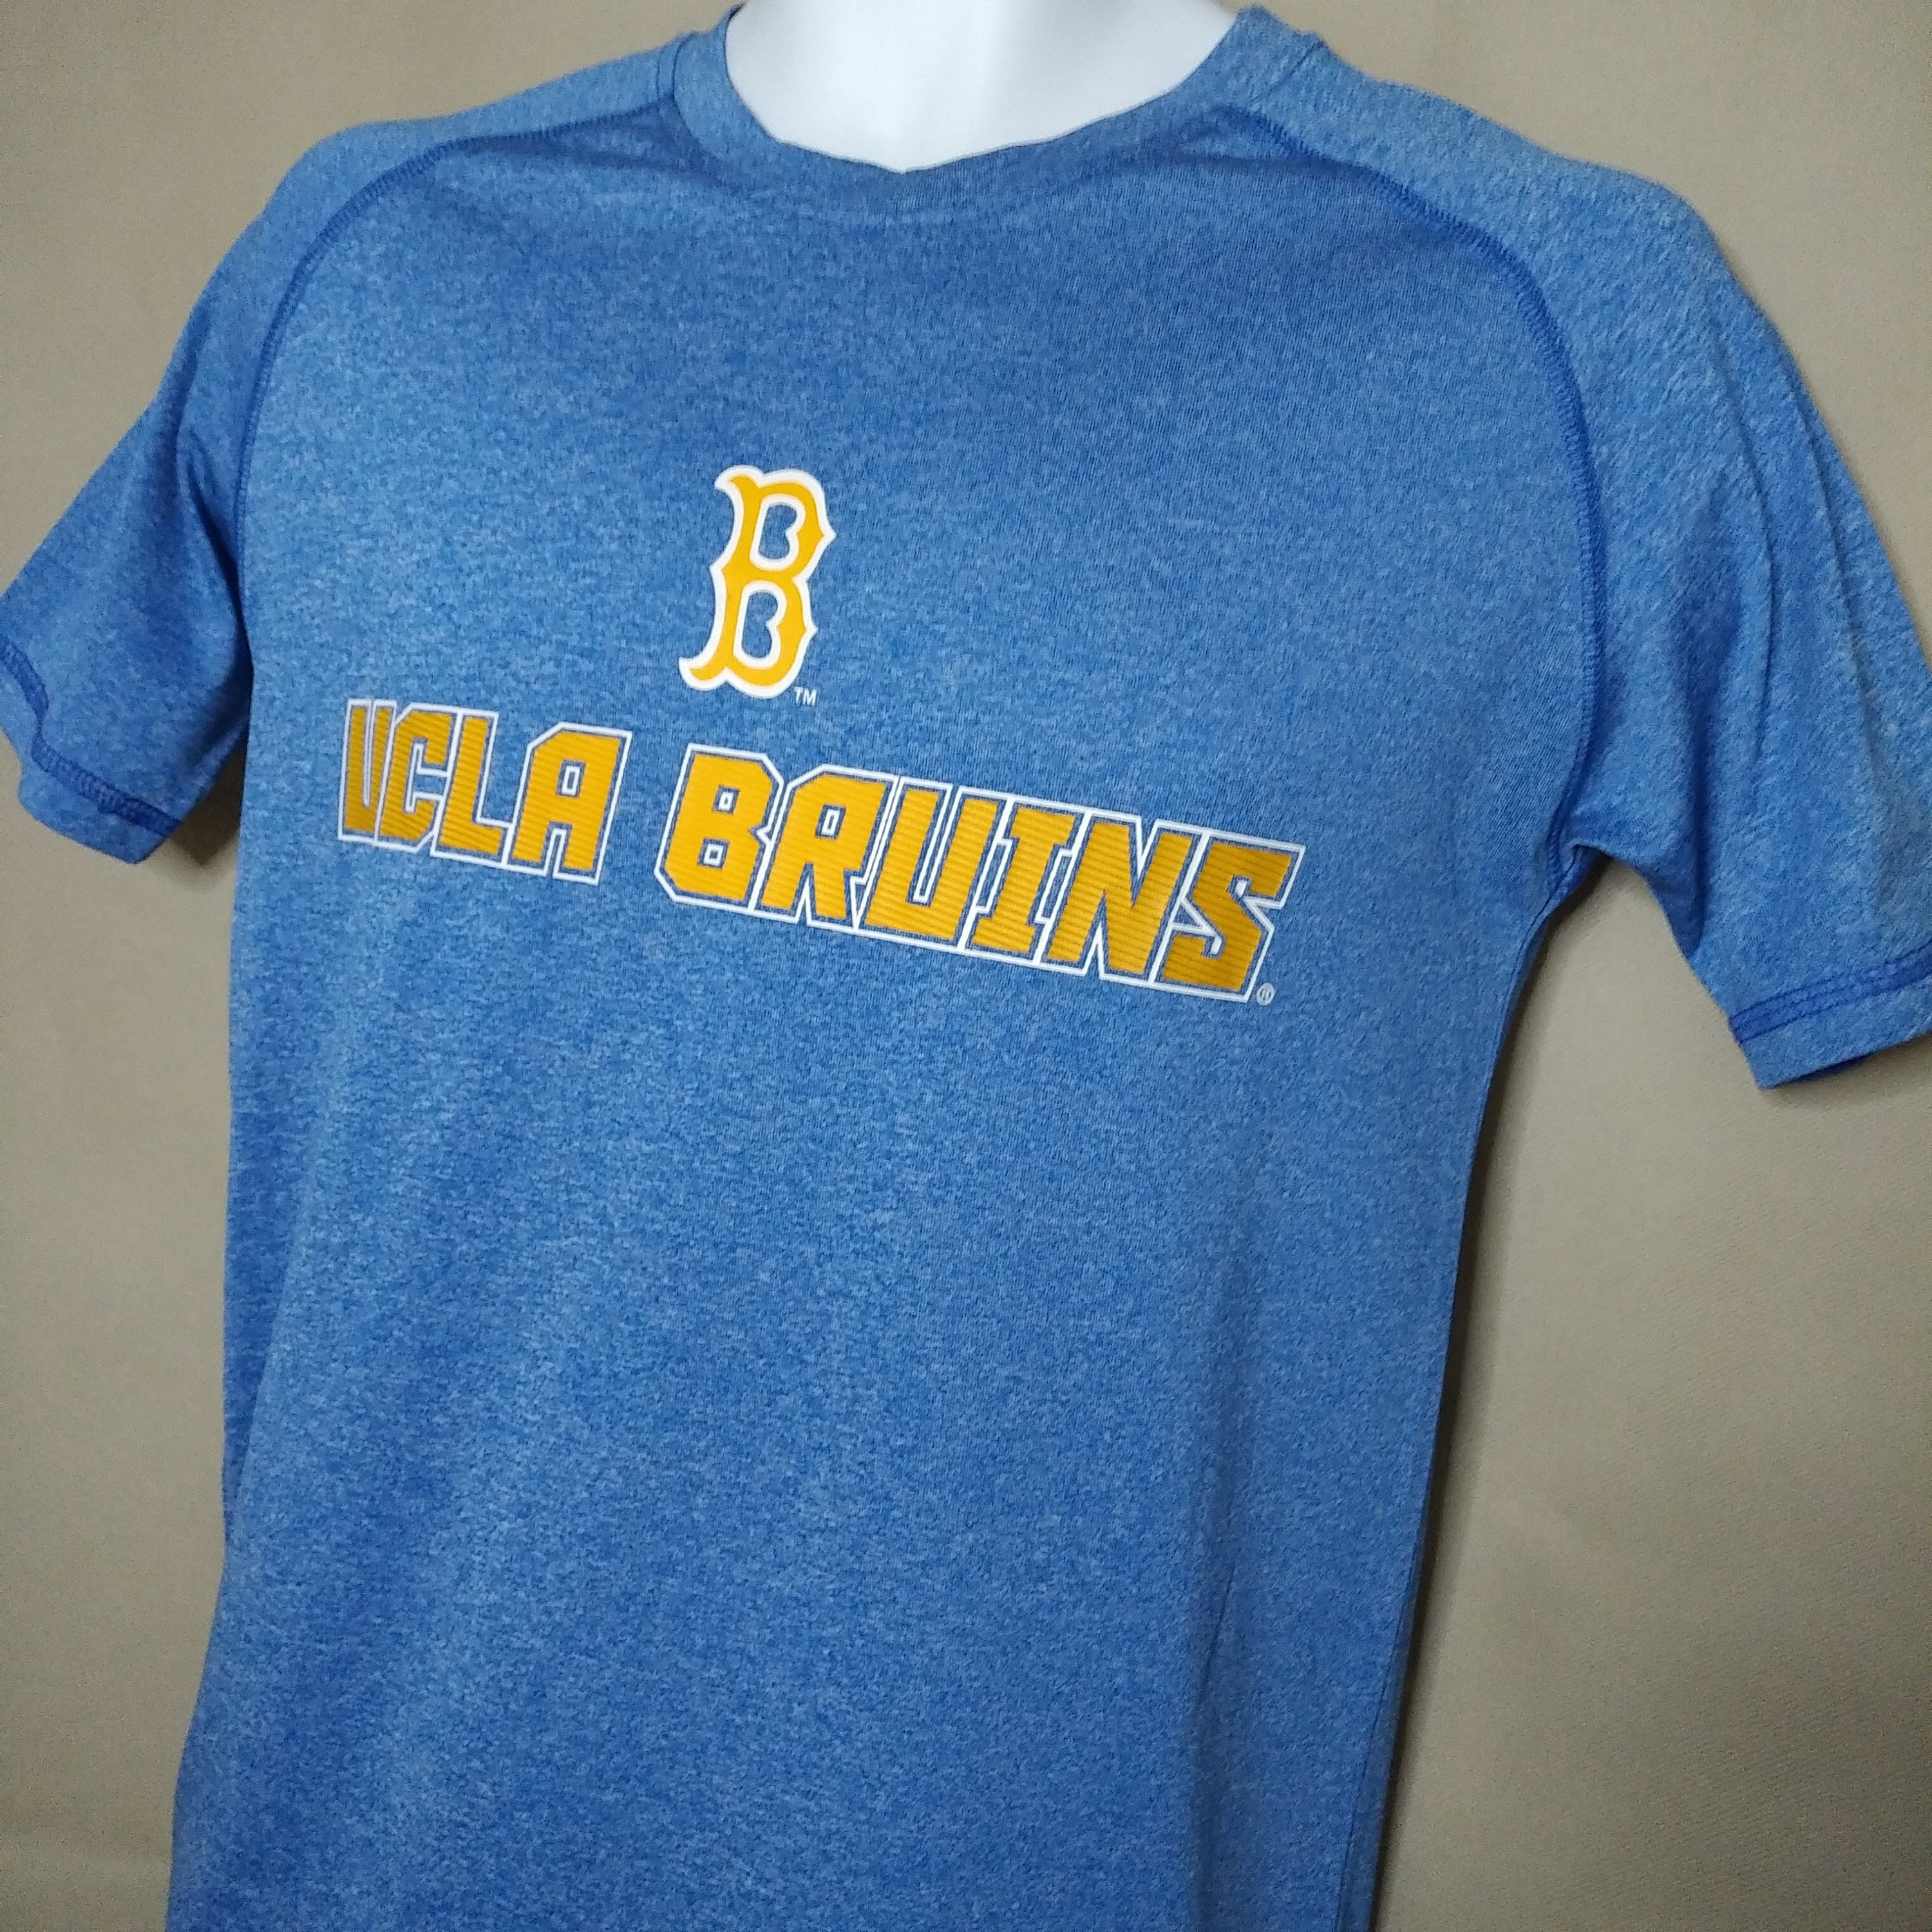 Kleding Herenkleding Overhemden & T-shirts T-shirts Vtg 80 ' UCLA BRUINS University Ringer Tee Shirt Basketbal Voetbal NCAA Soffe Shirts 